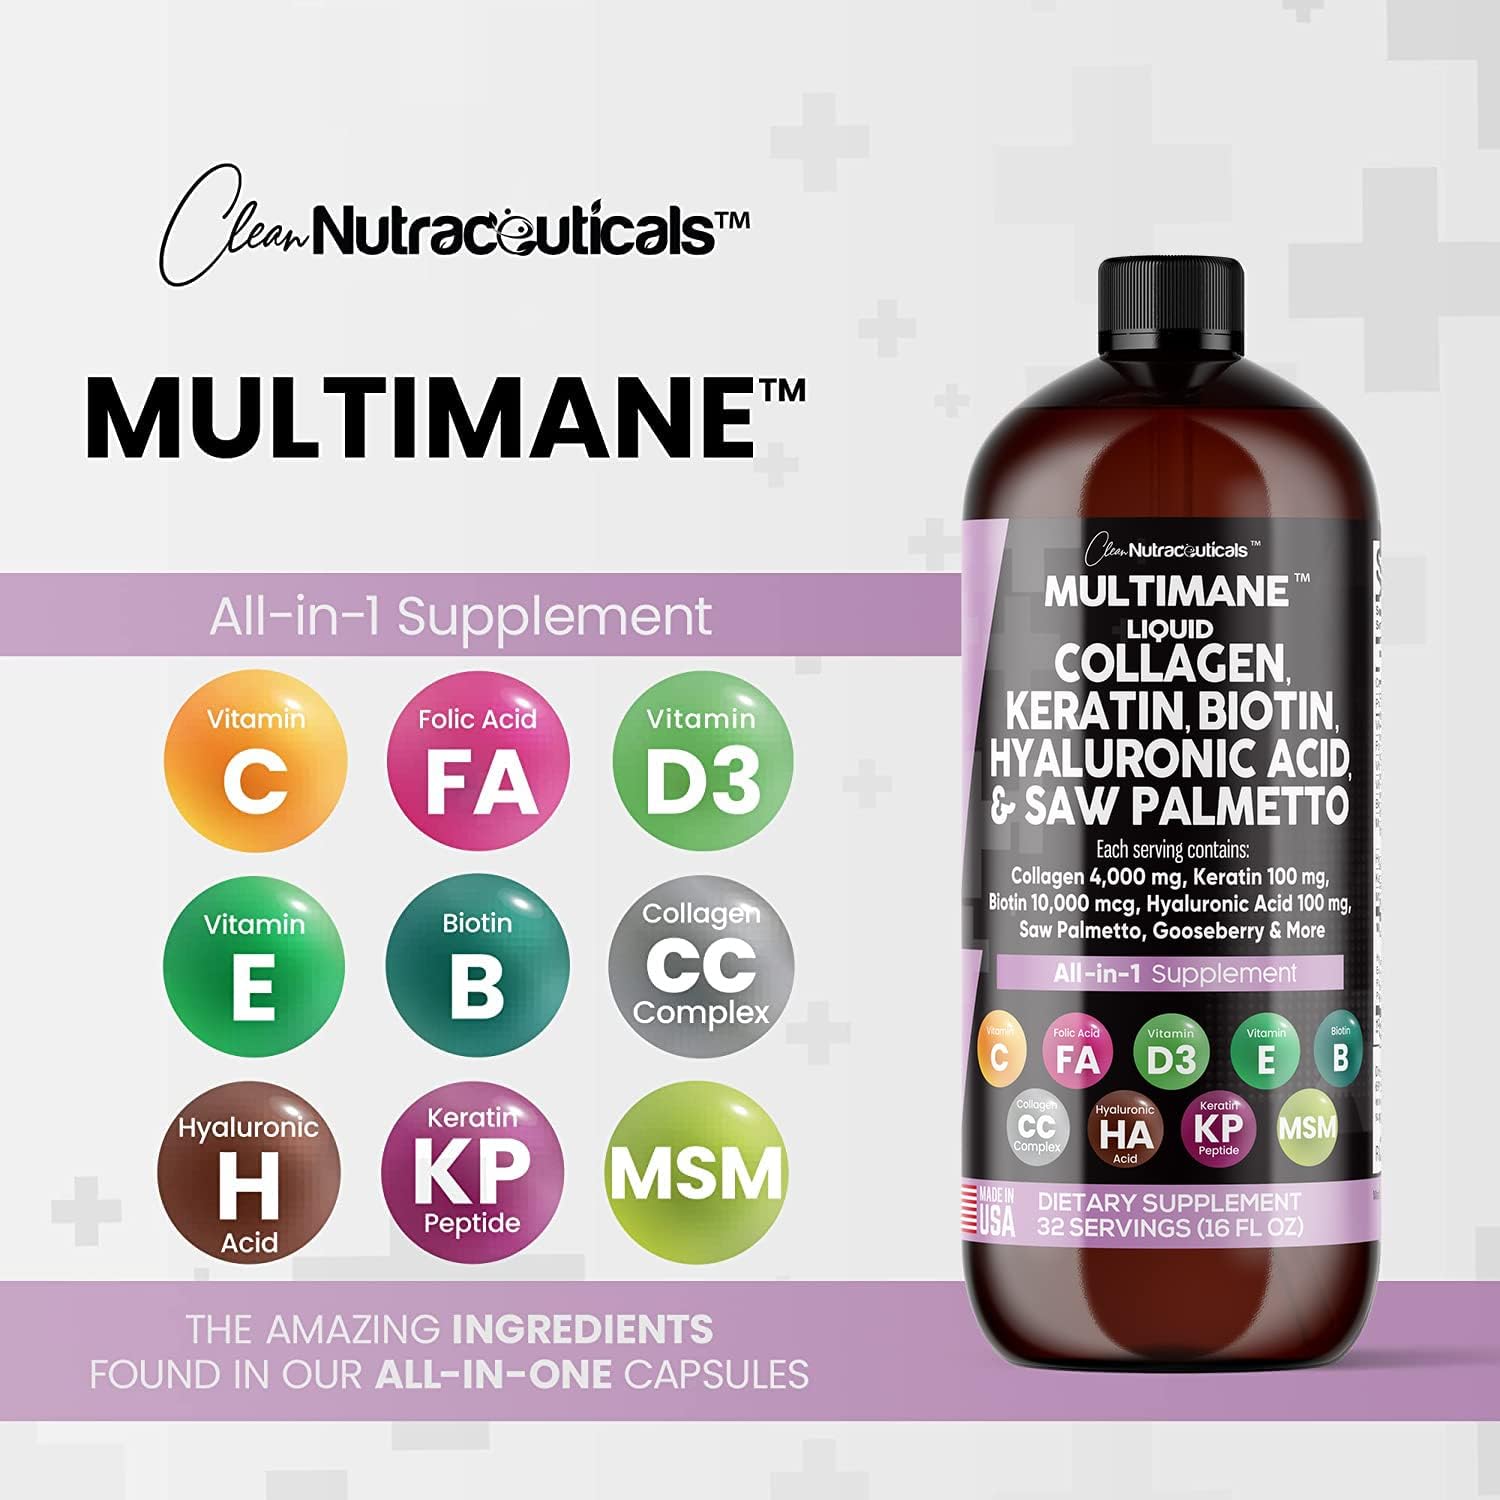 MultiMane Liquid Collagen™